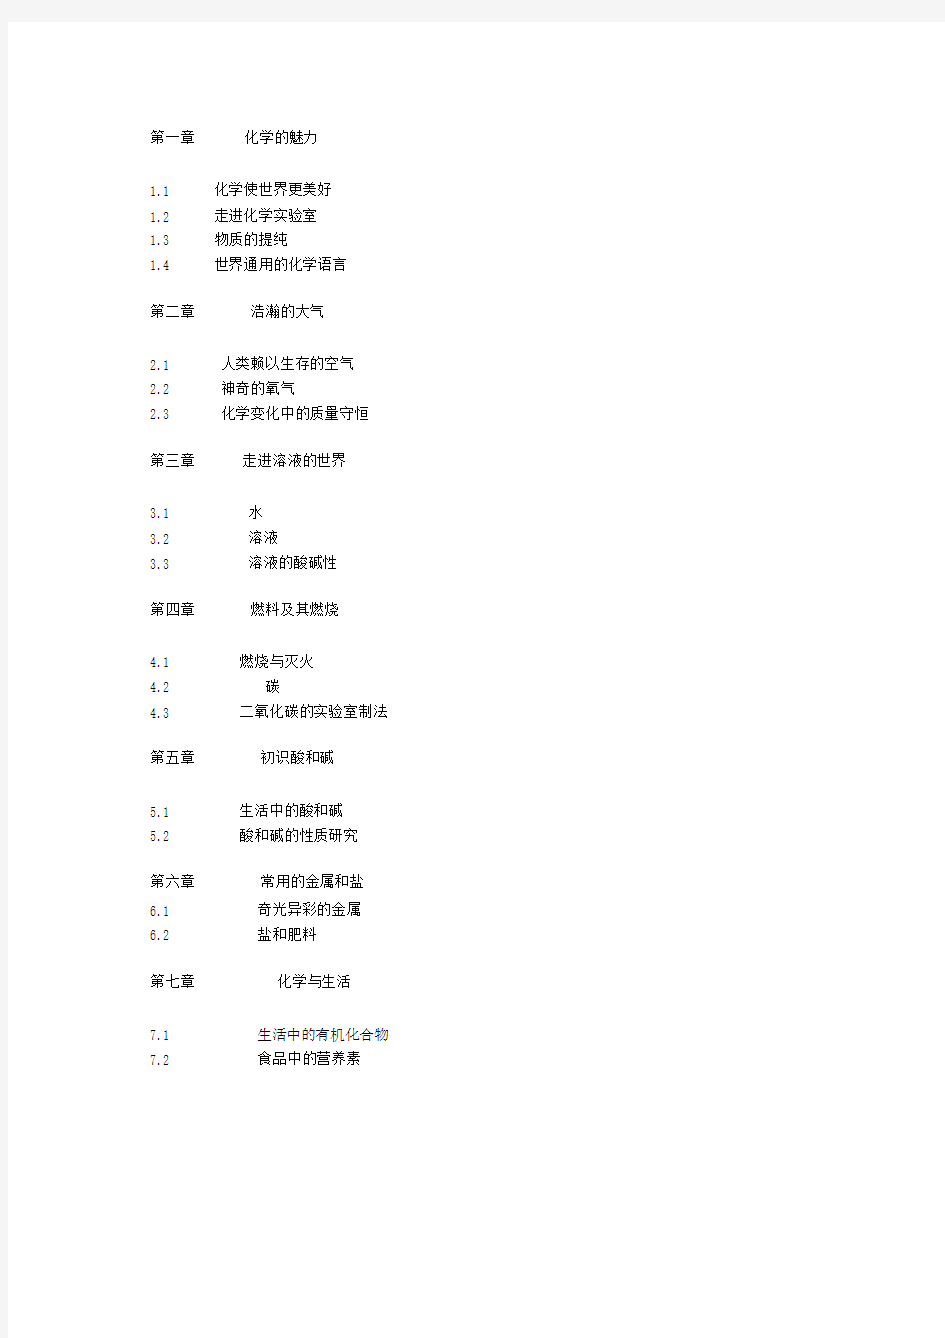 (完整word版)初中化学教材目录(上海教育出版社).doc